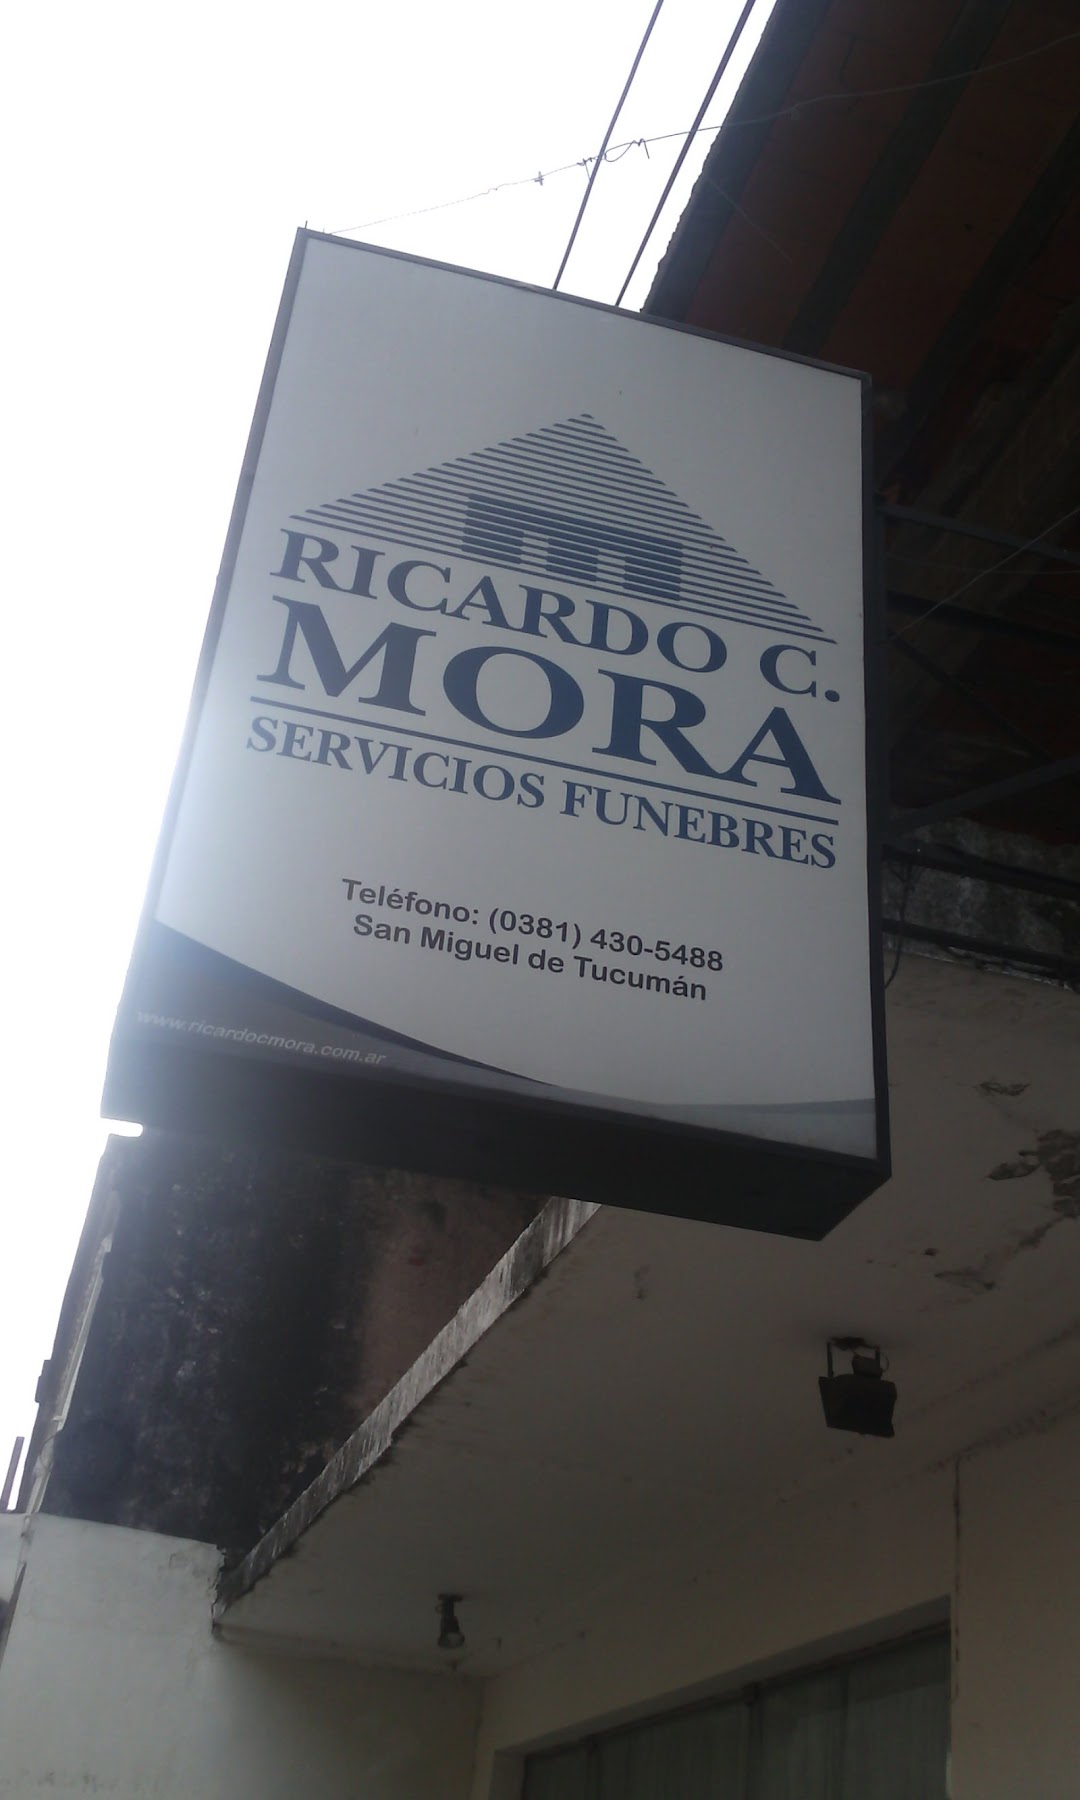 SERVICIOS FÚNEBRES RICARDO C. MORA